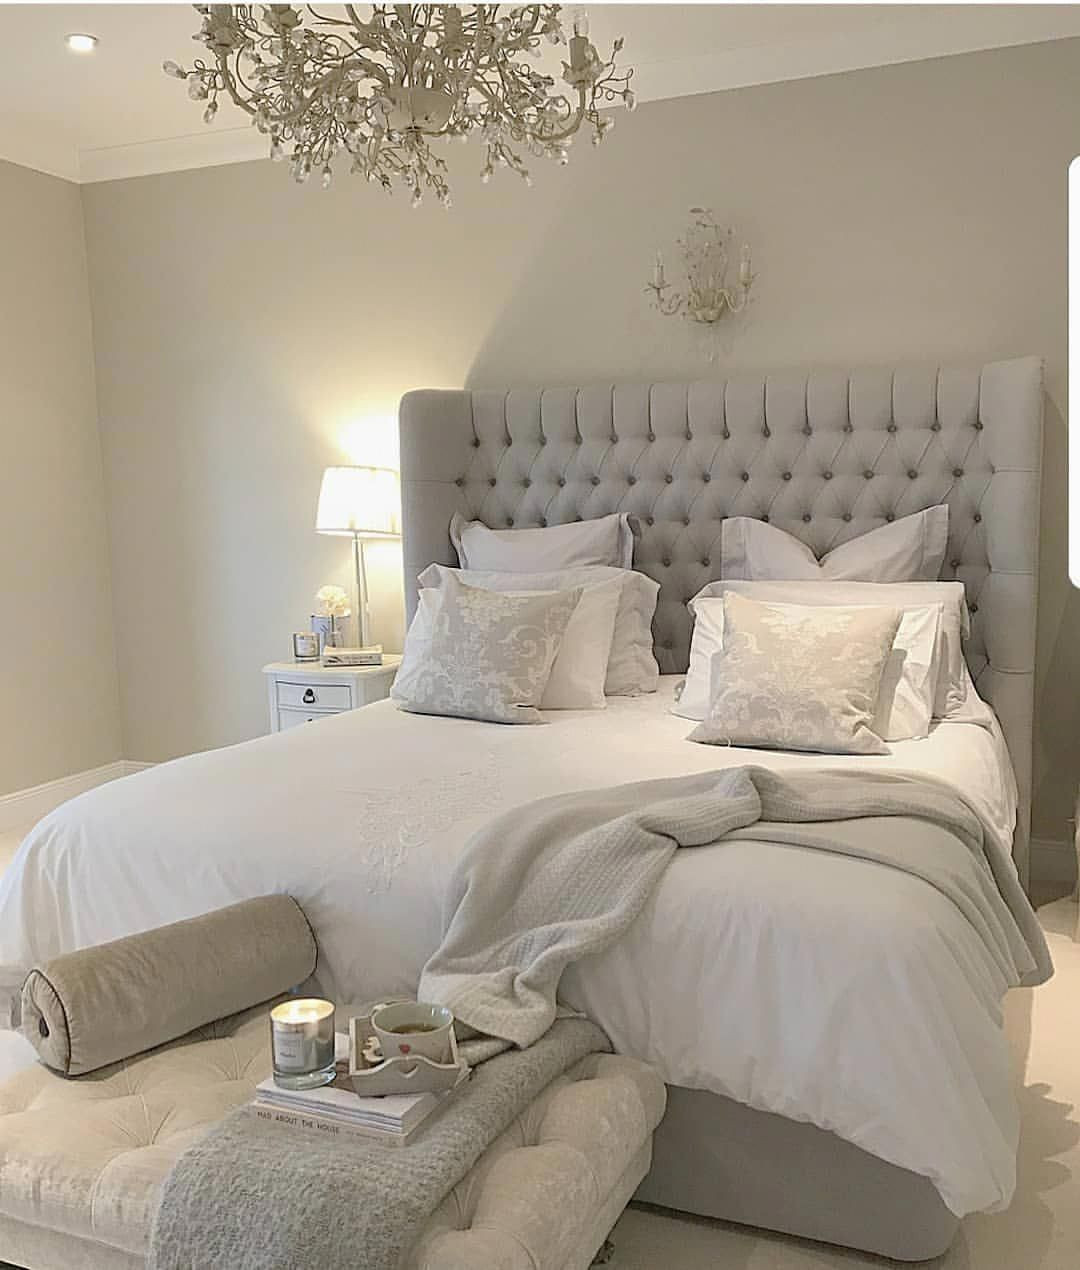 Elegant Bedspreads Master Bedroom
 Elegant Bedspreads Luxury Bedding BedSheetsHowToChoose